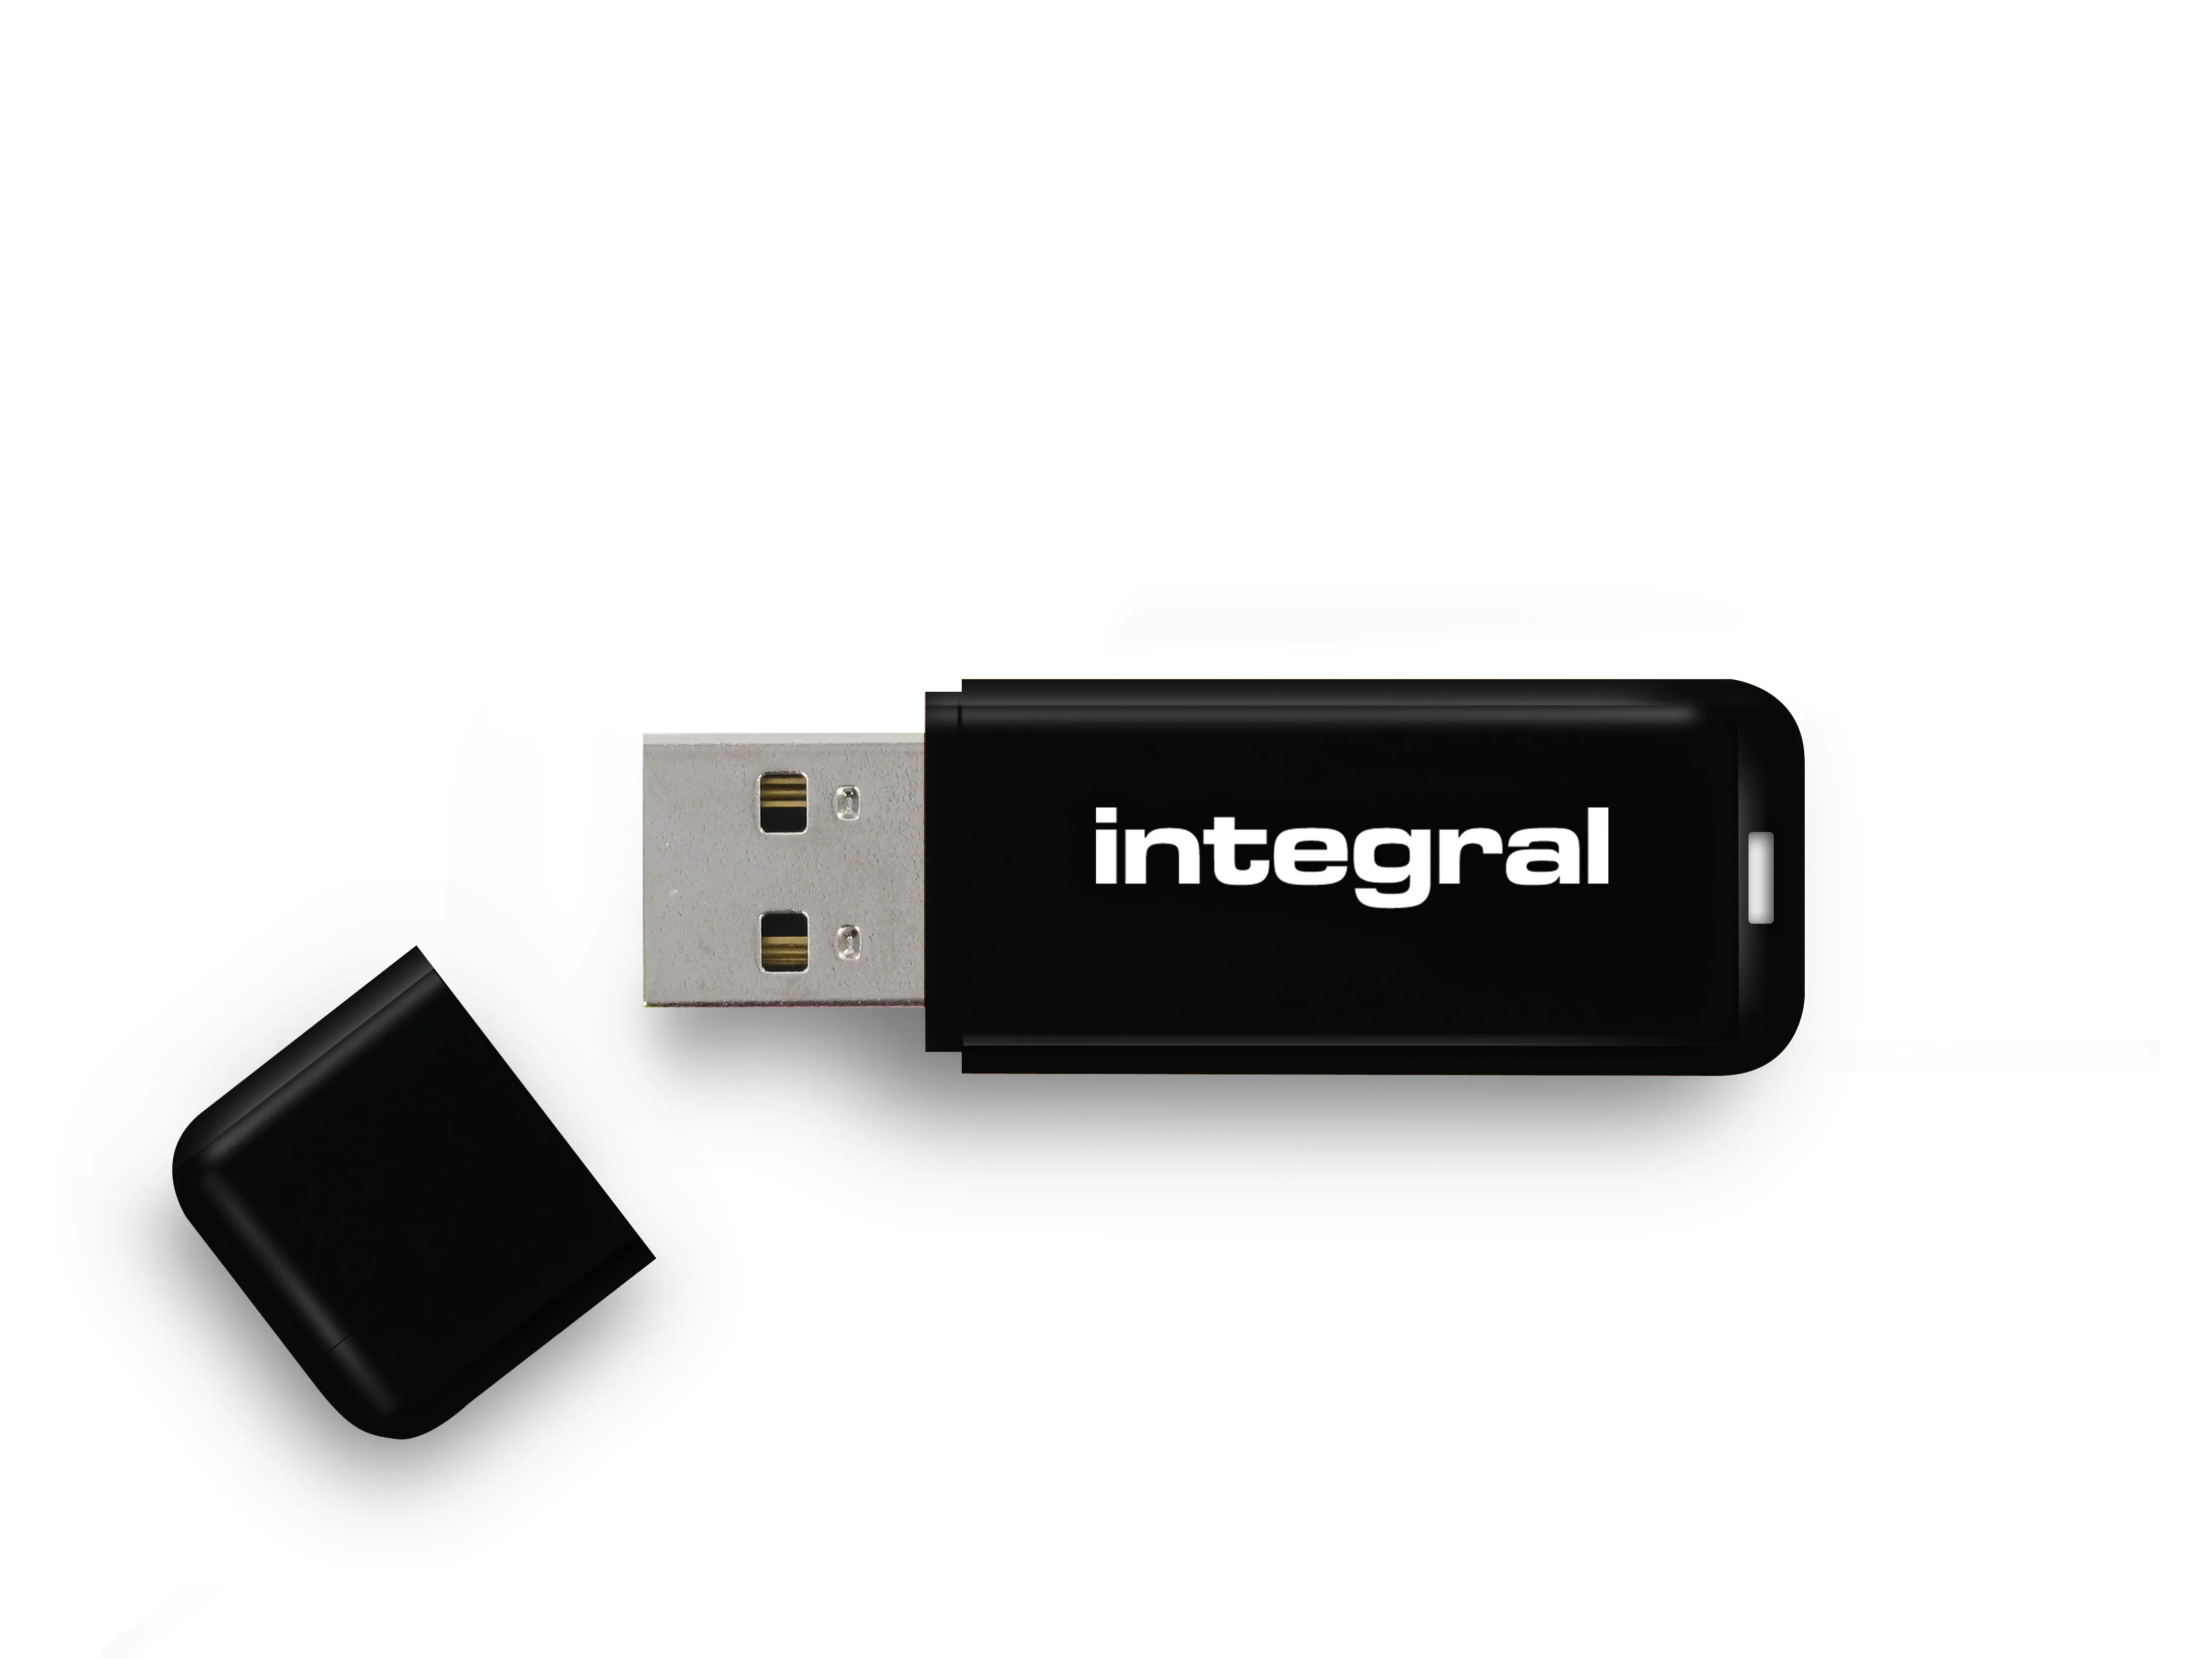 Vente Integral 128GB USB3.0 DRIVE NEON BLACK UP TO Integral au meilleur prix - visuel 2